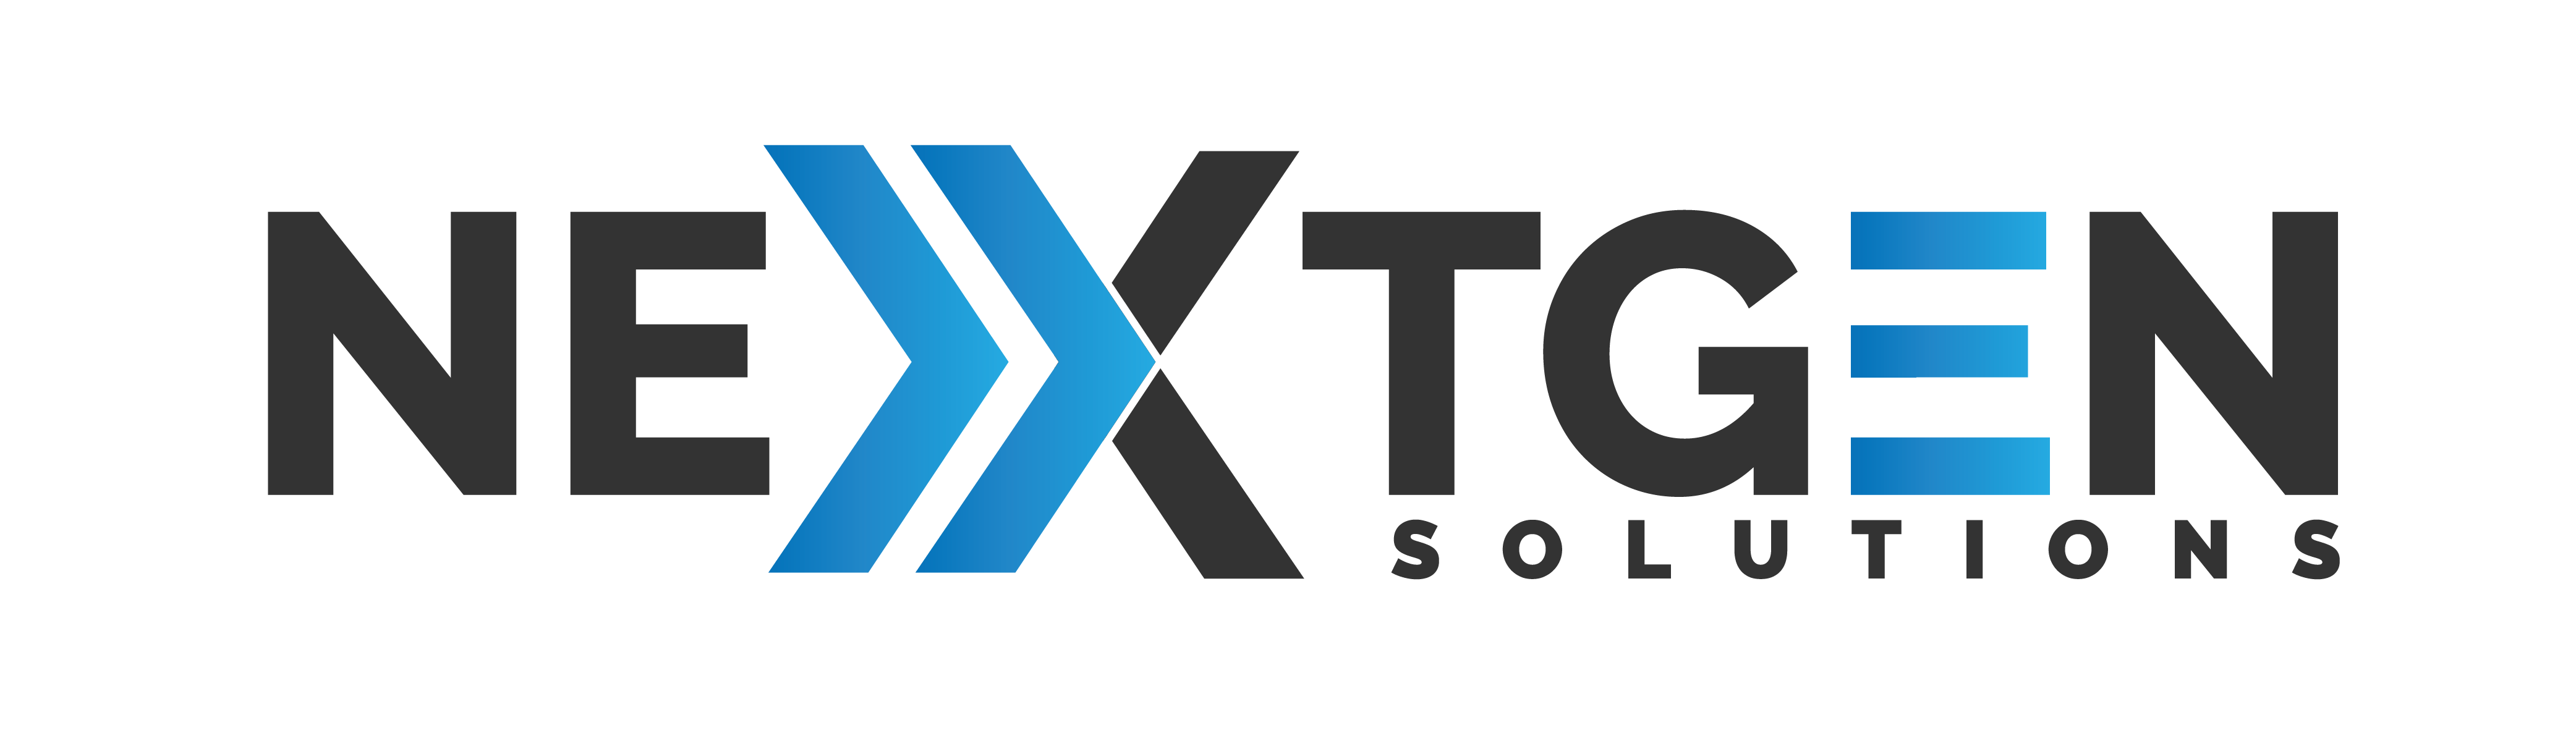 Nextgen Solutions - No Background - wide - 01-01